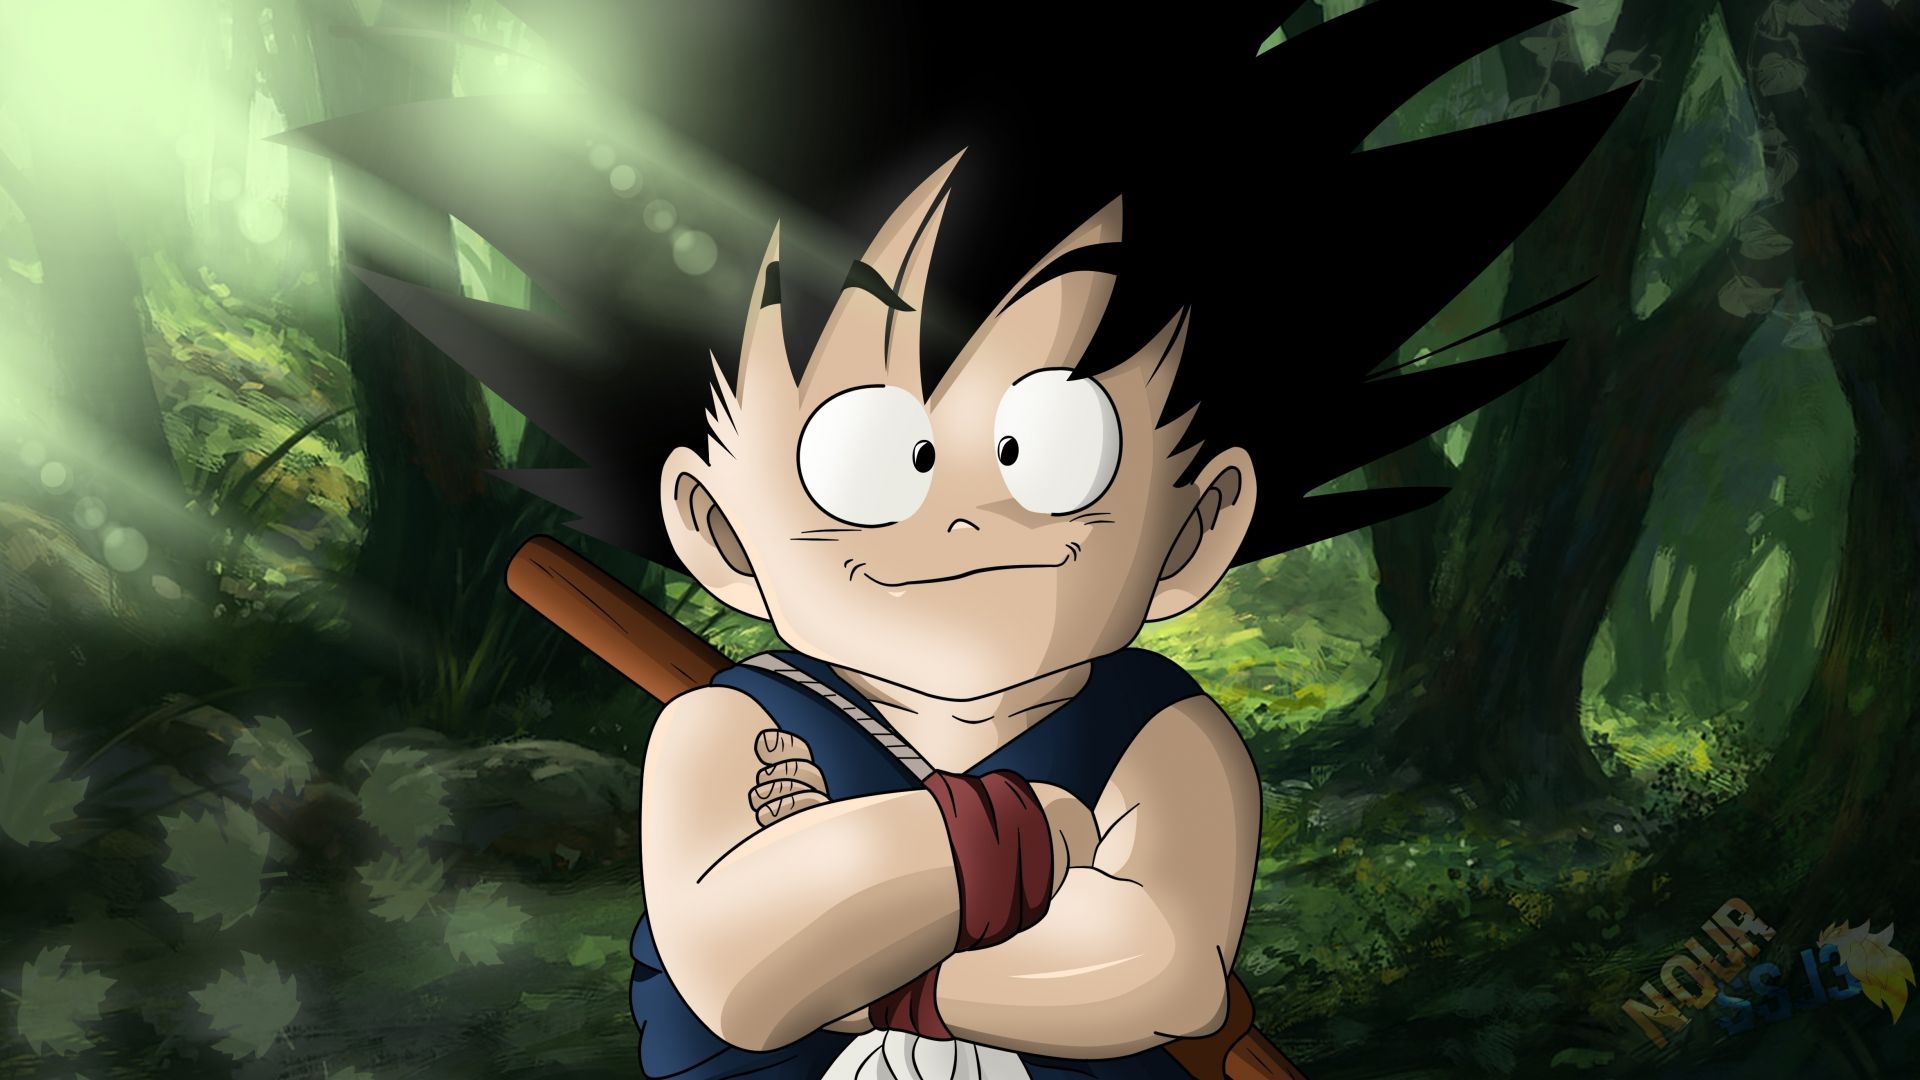 Is Goku handsome? - Quora